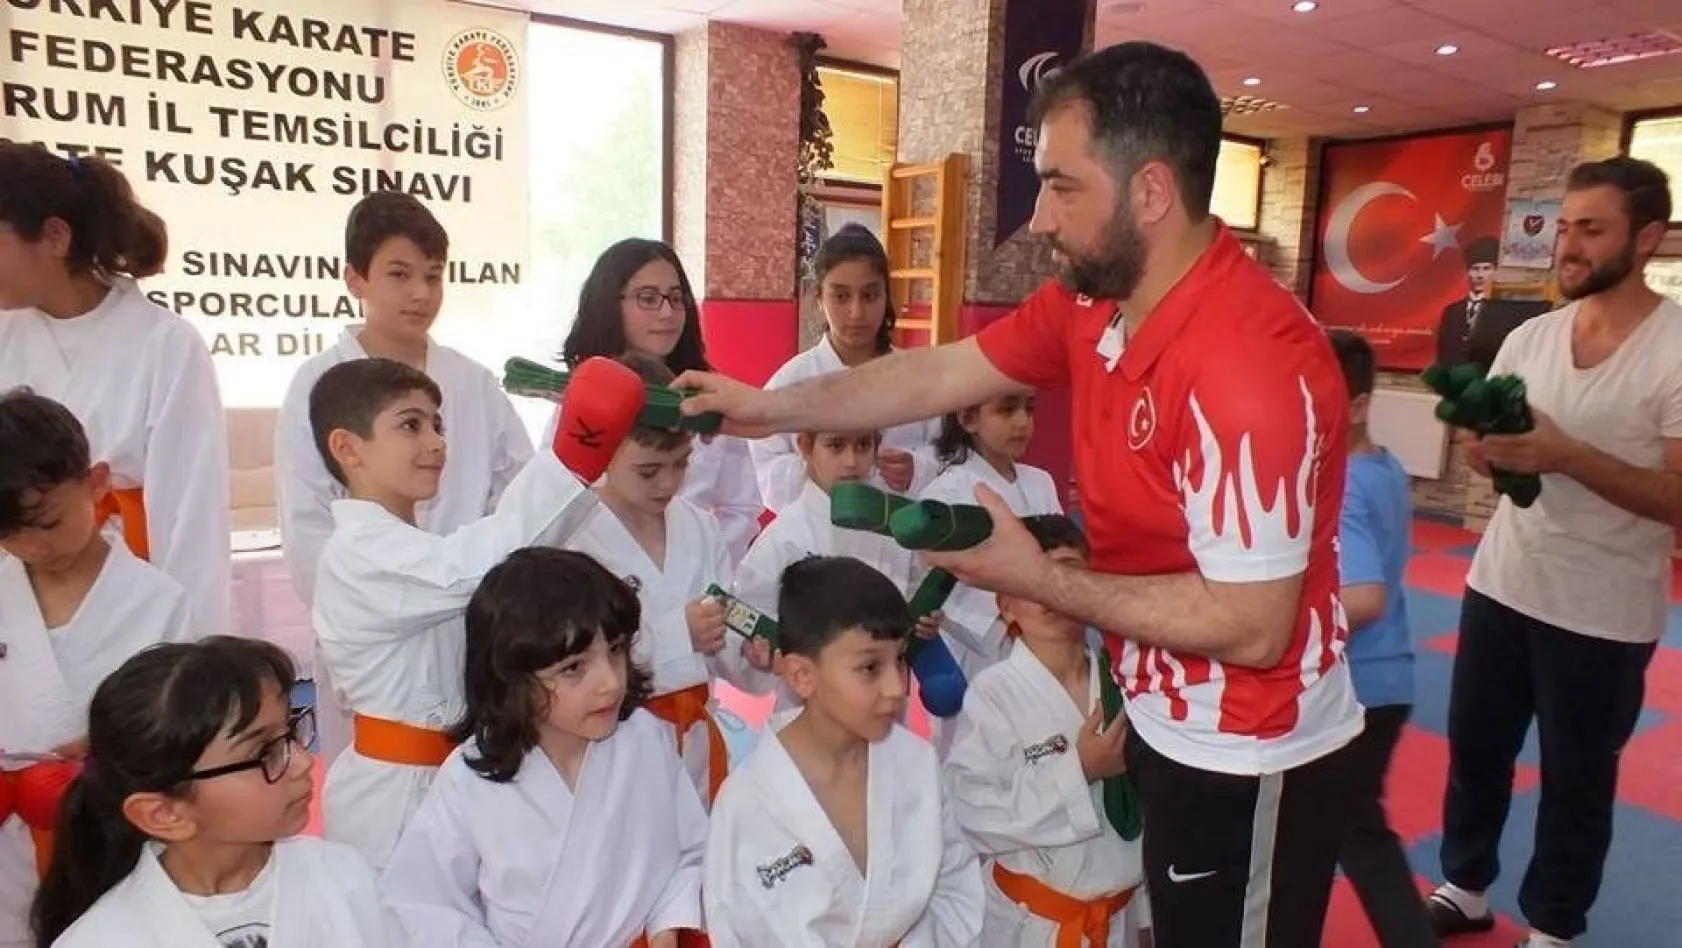 Erzurum'da karateciler hafta sonunda kuşak sınavı heyecanı yaşadı
